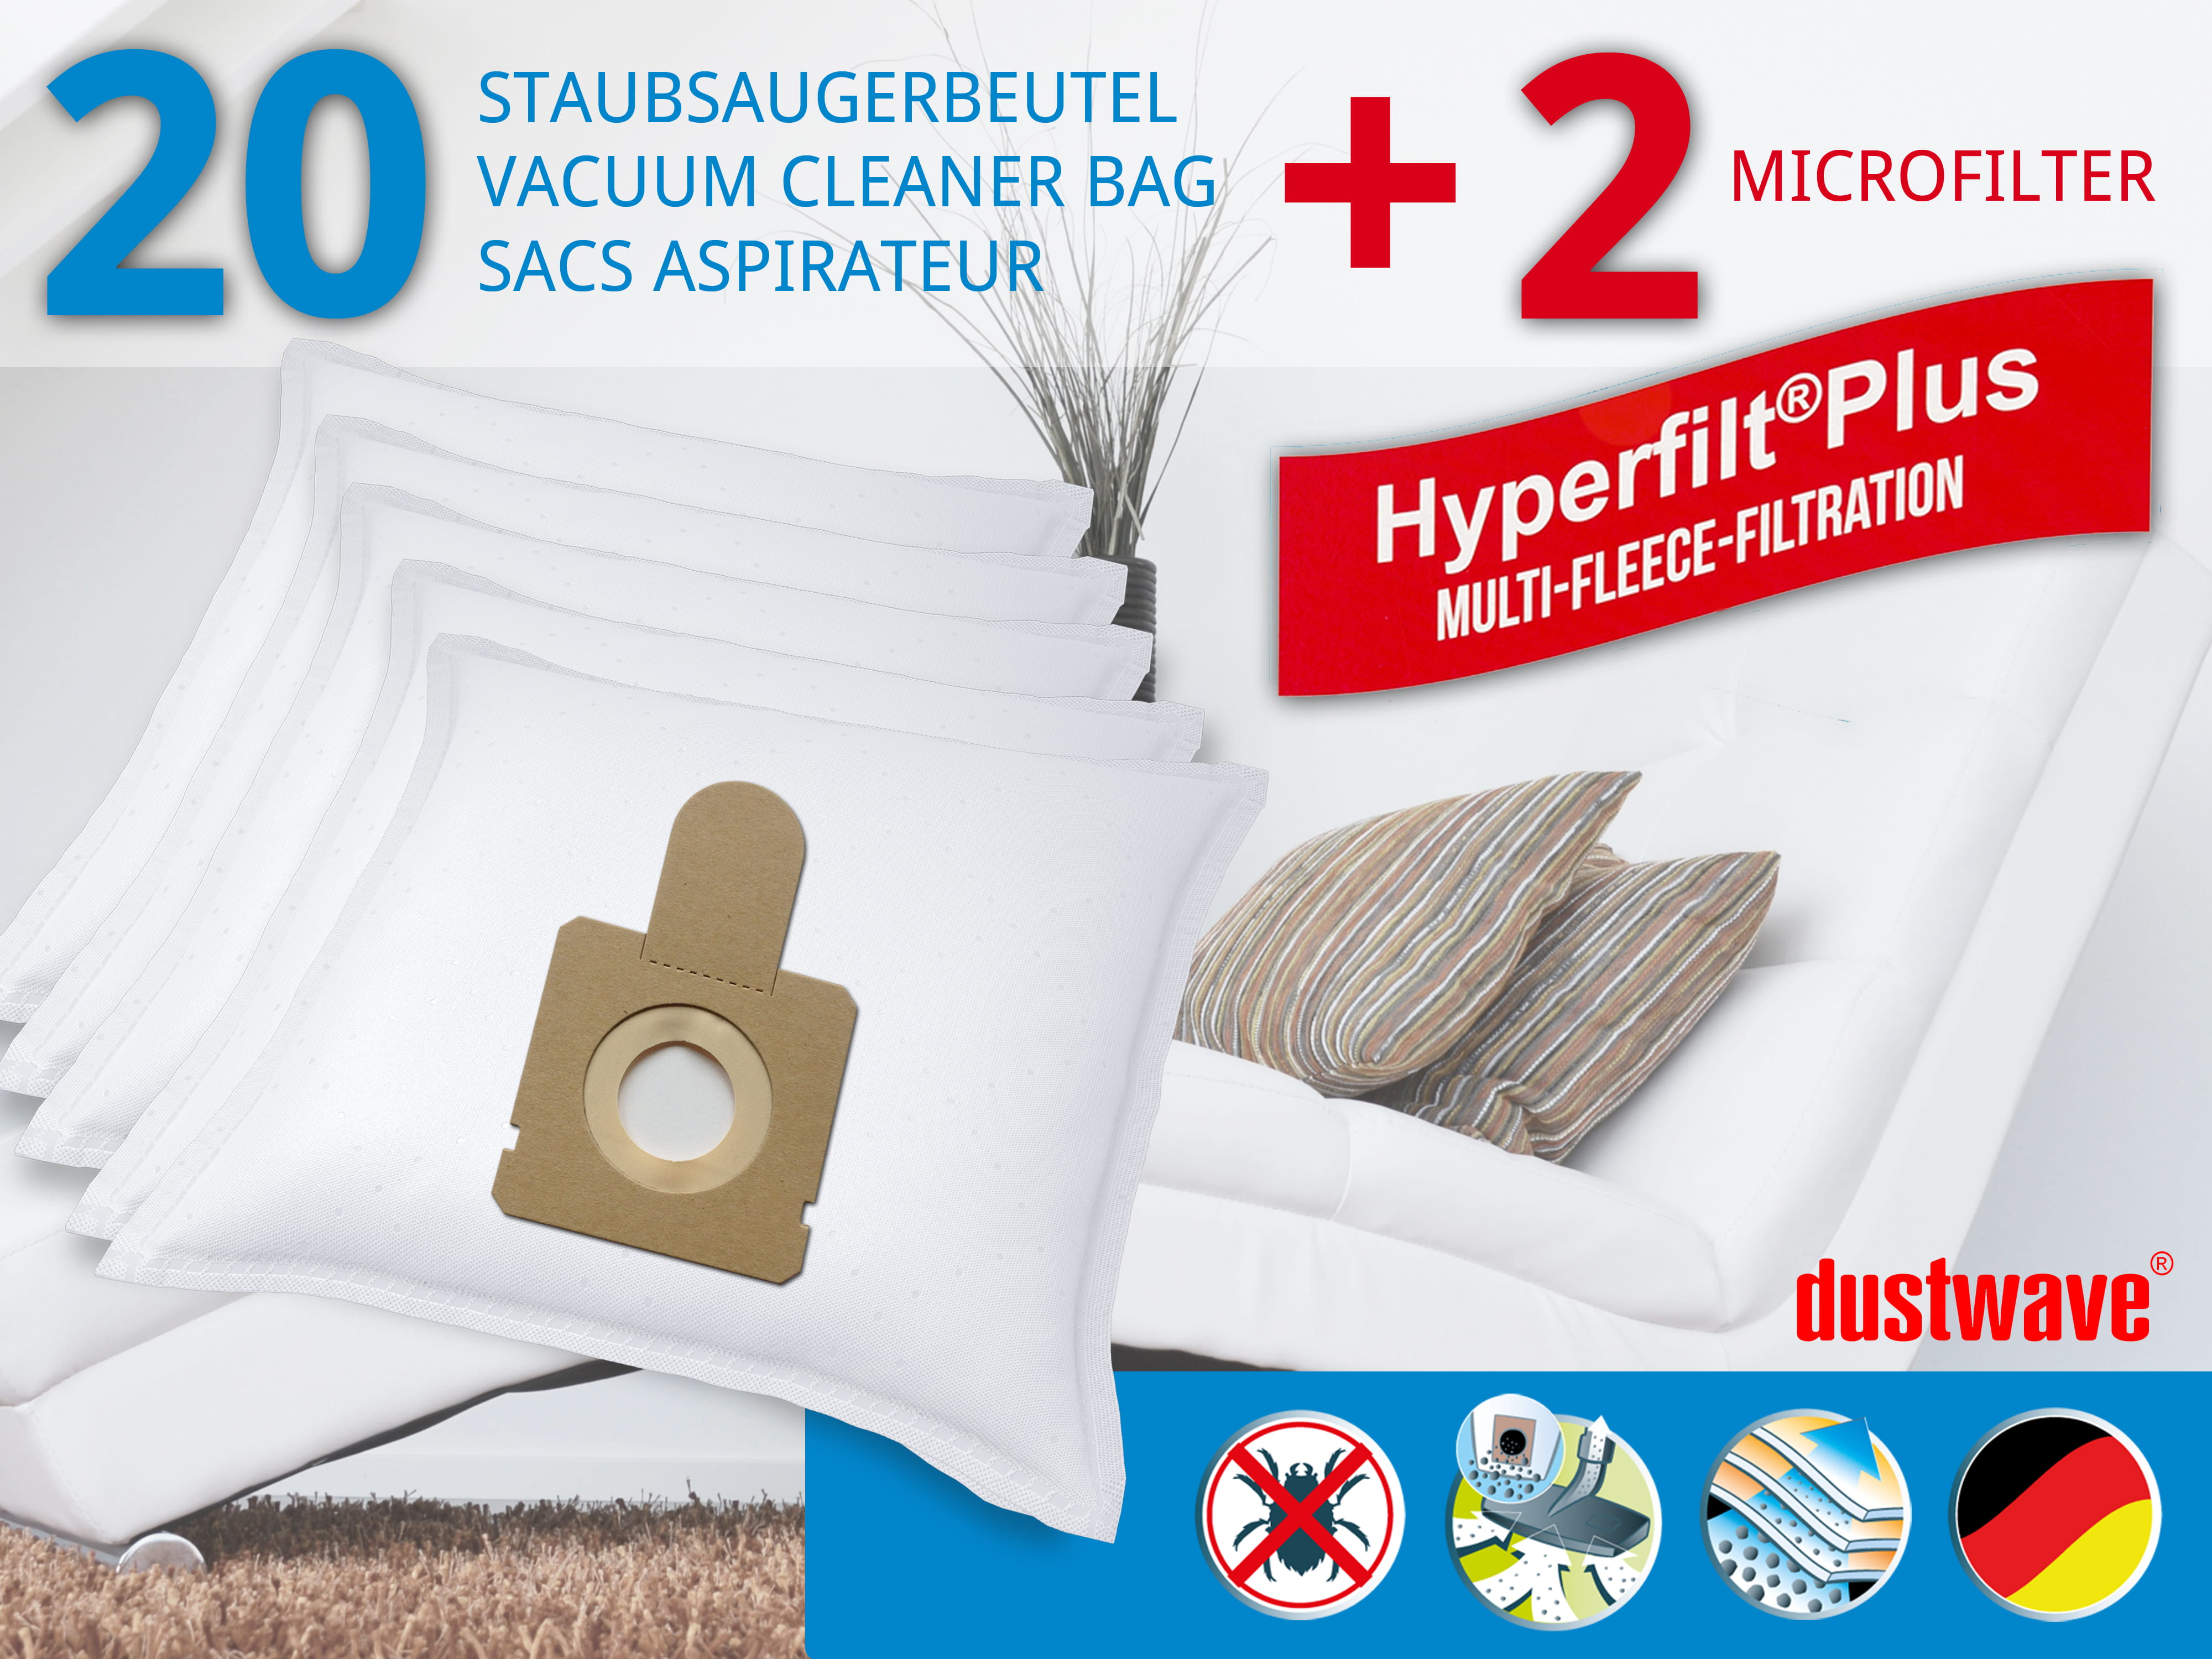 Dustwave® 20 Staubsaugerbeutel für Hoover CP71_CP43011 - hocheffizient, mehrlagiges Mikrovlies mit Hygieneverschluss - Made in Germany